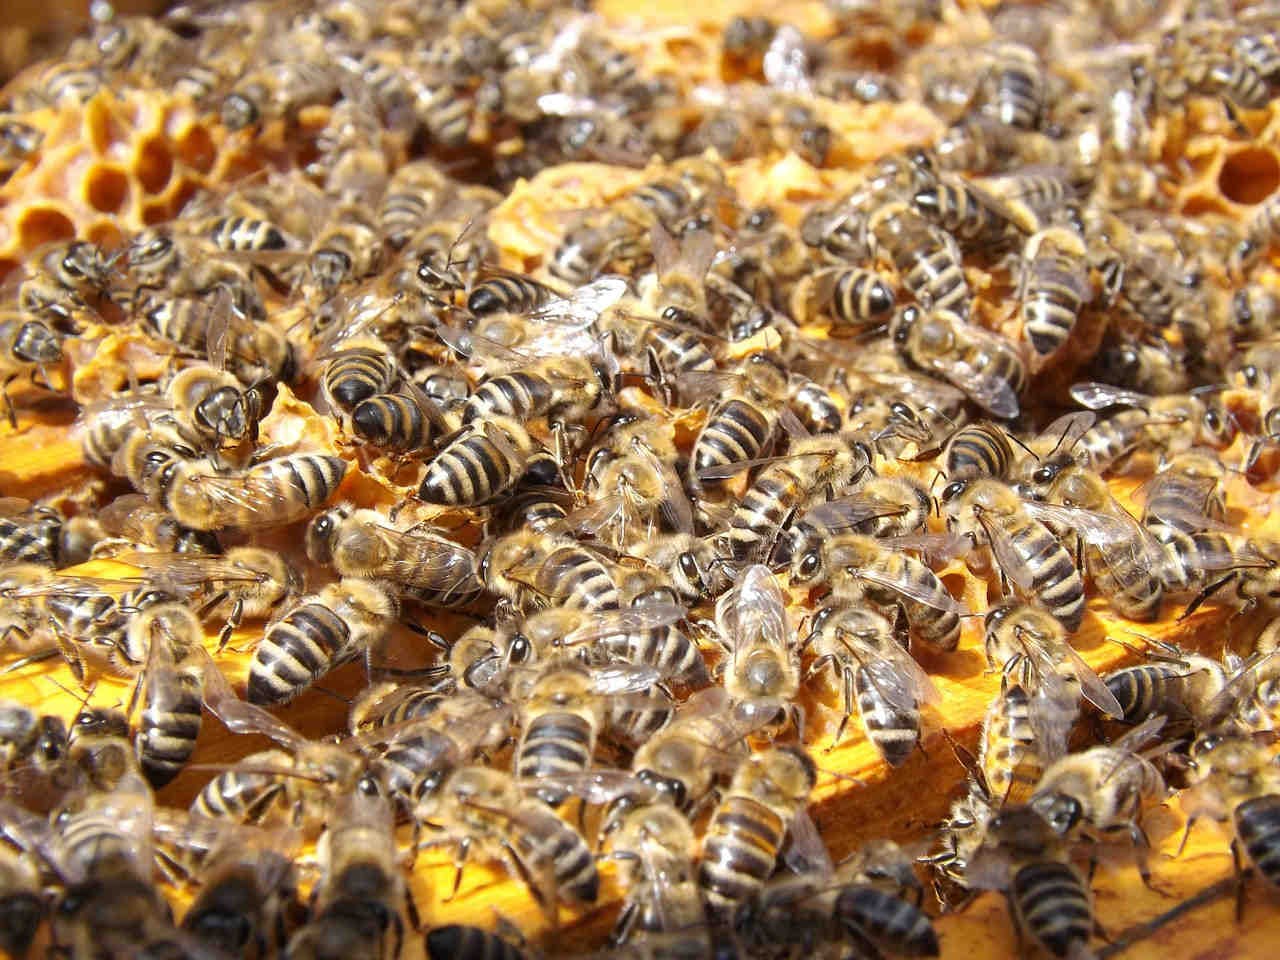 3. Come posizionare l’apiario